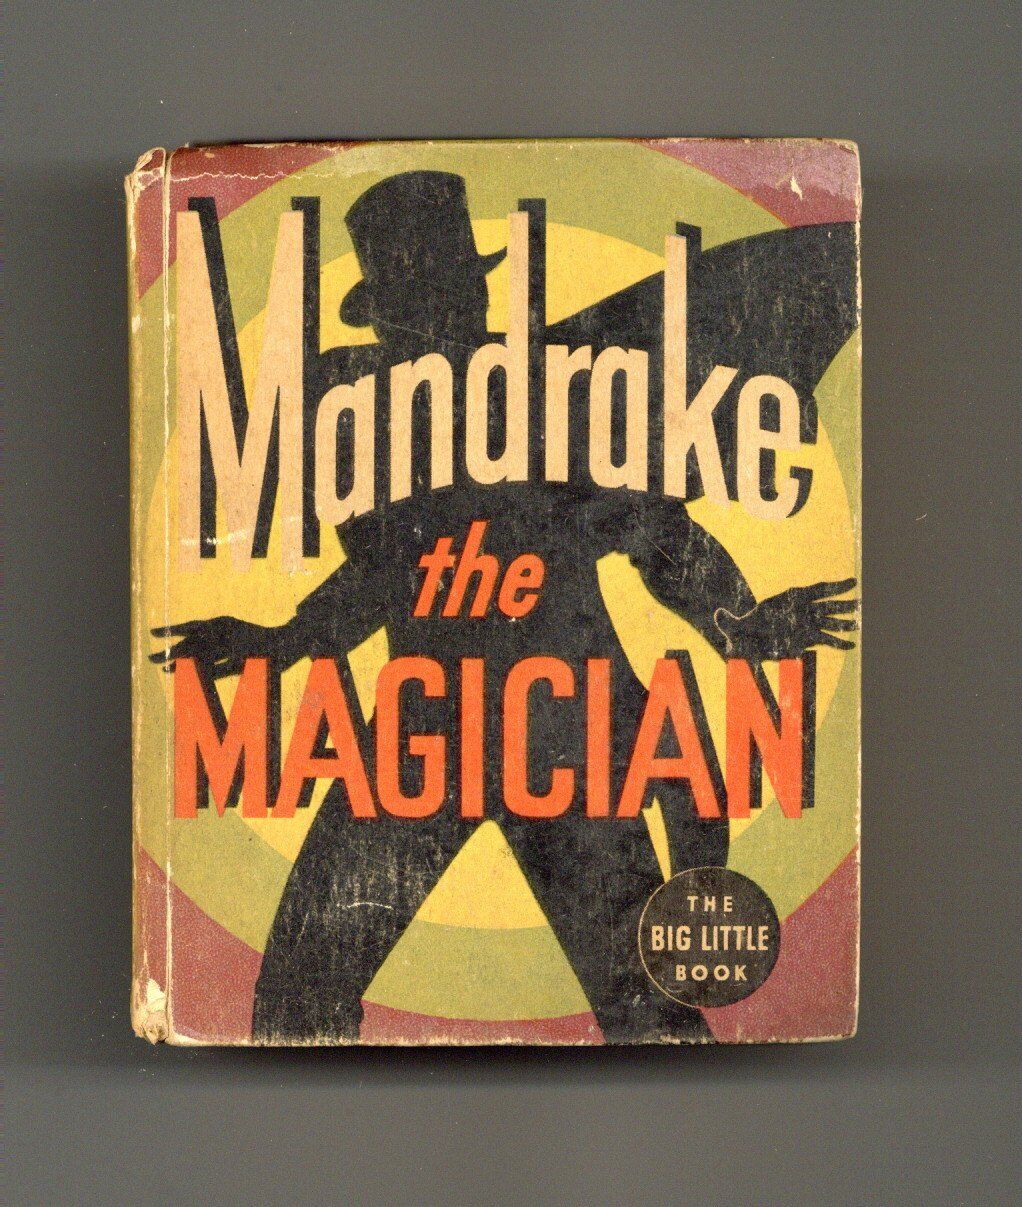 Mandrake the Magician #1167 VG 1935